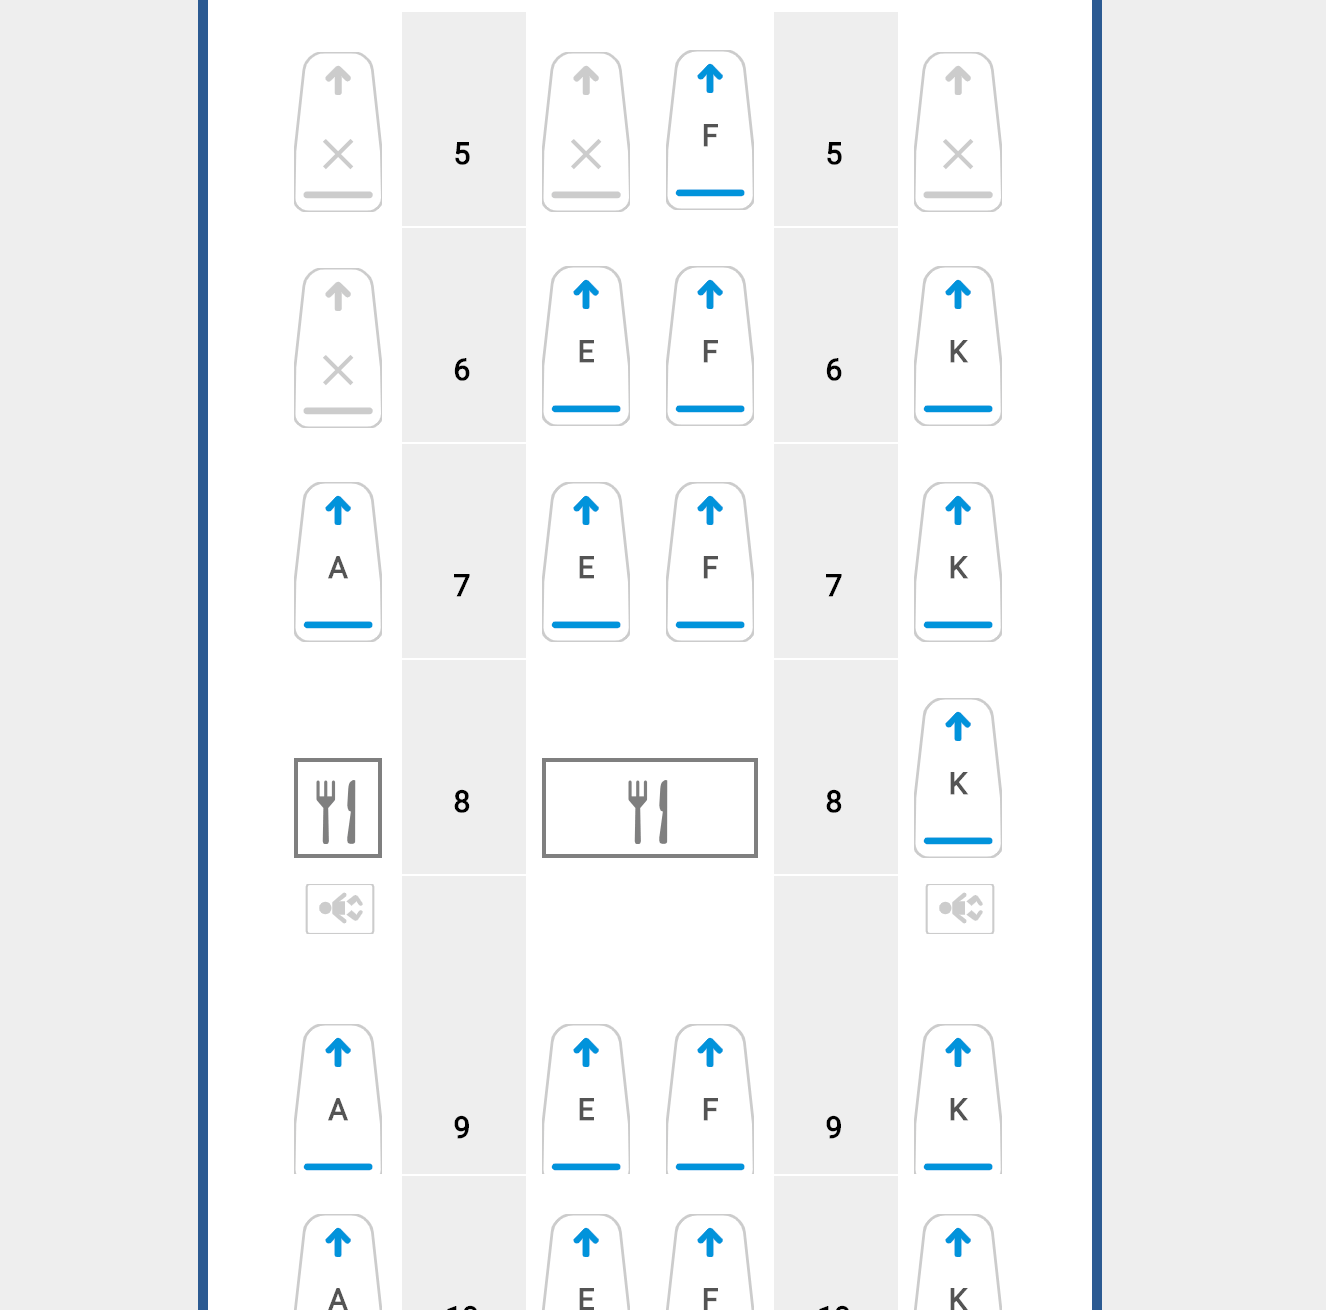 British Airways 777 Club Suite seat map